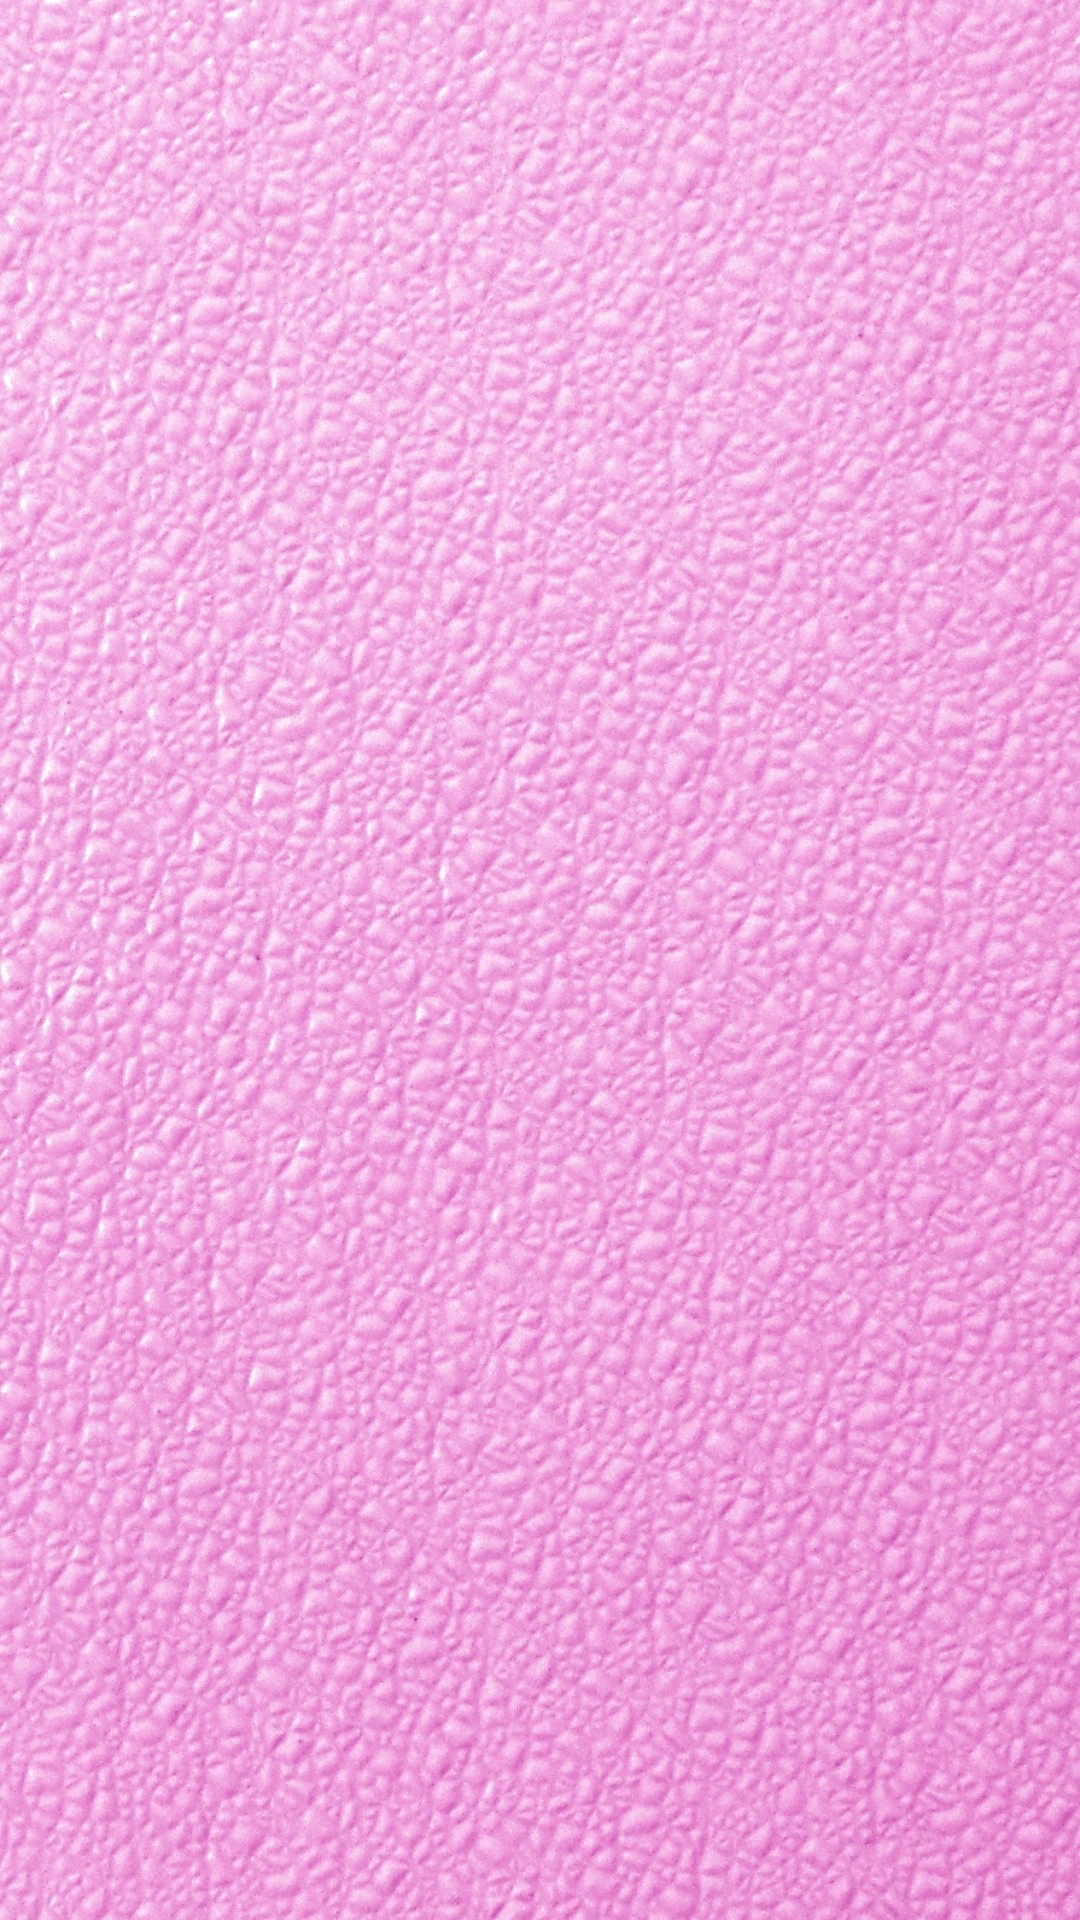 Light Pink phone wallpaper hd